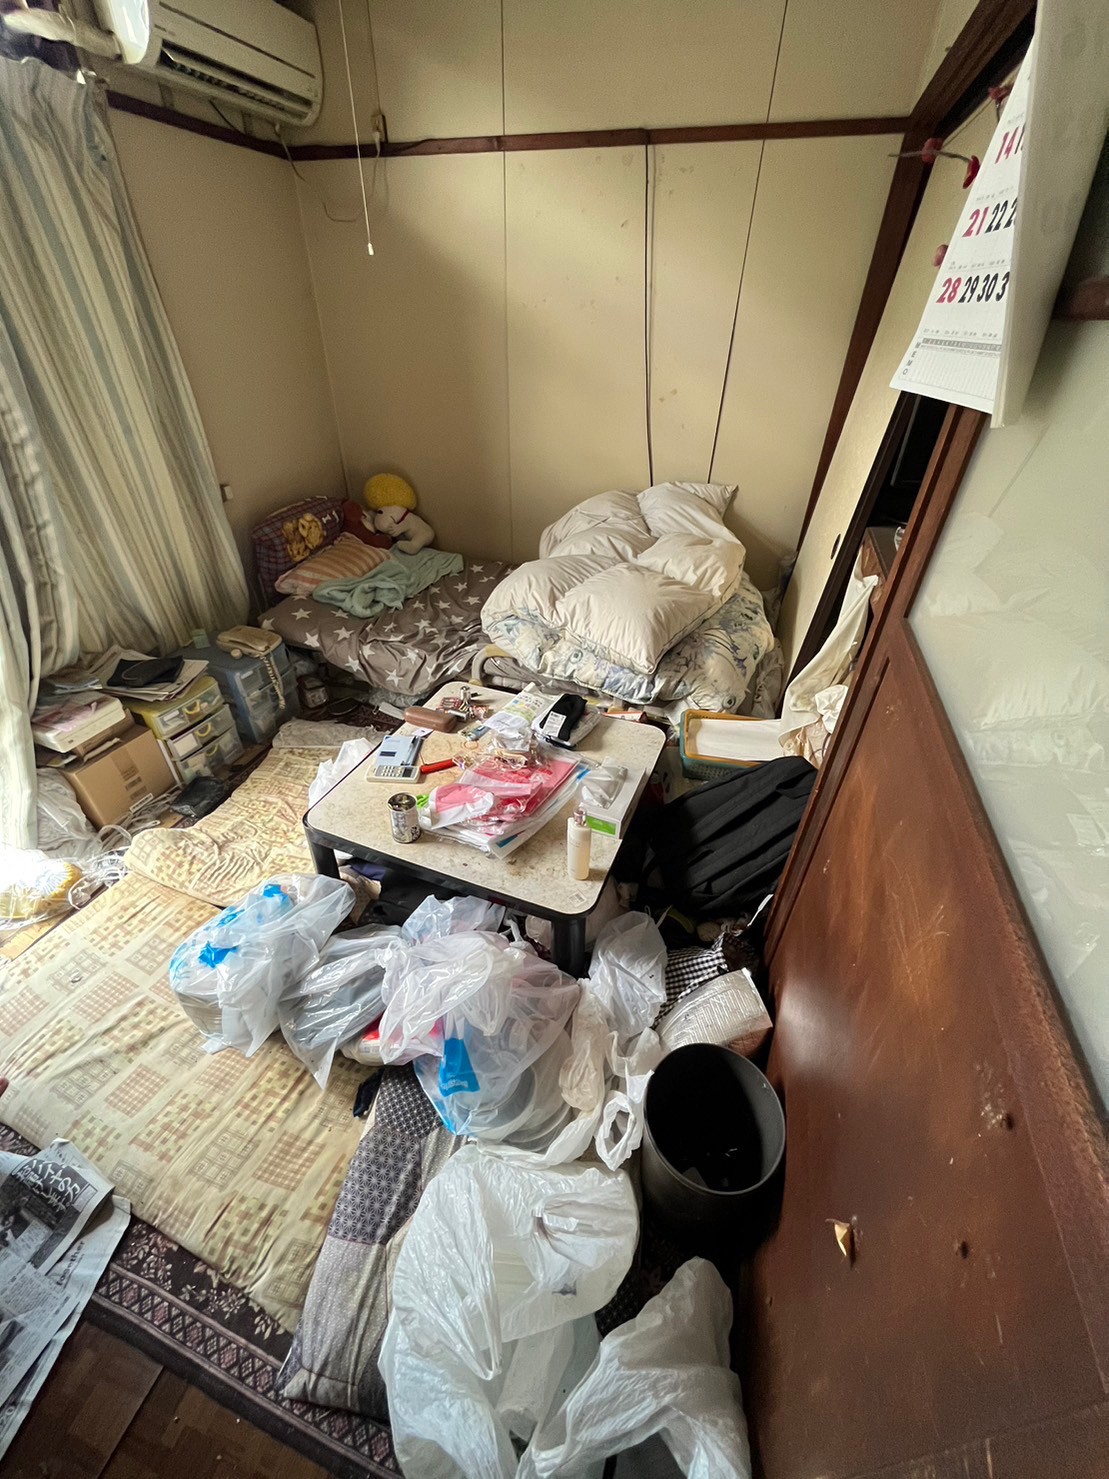 ベッド、布団、テーブル、衣類、生活用品の回収前の状態